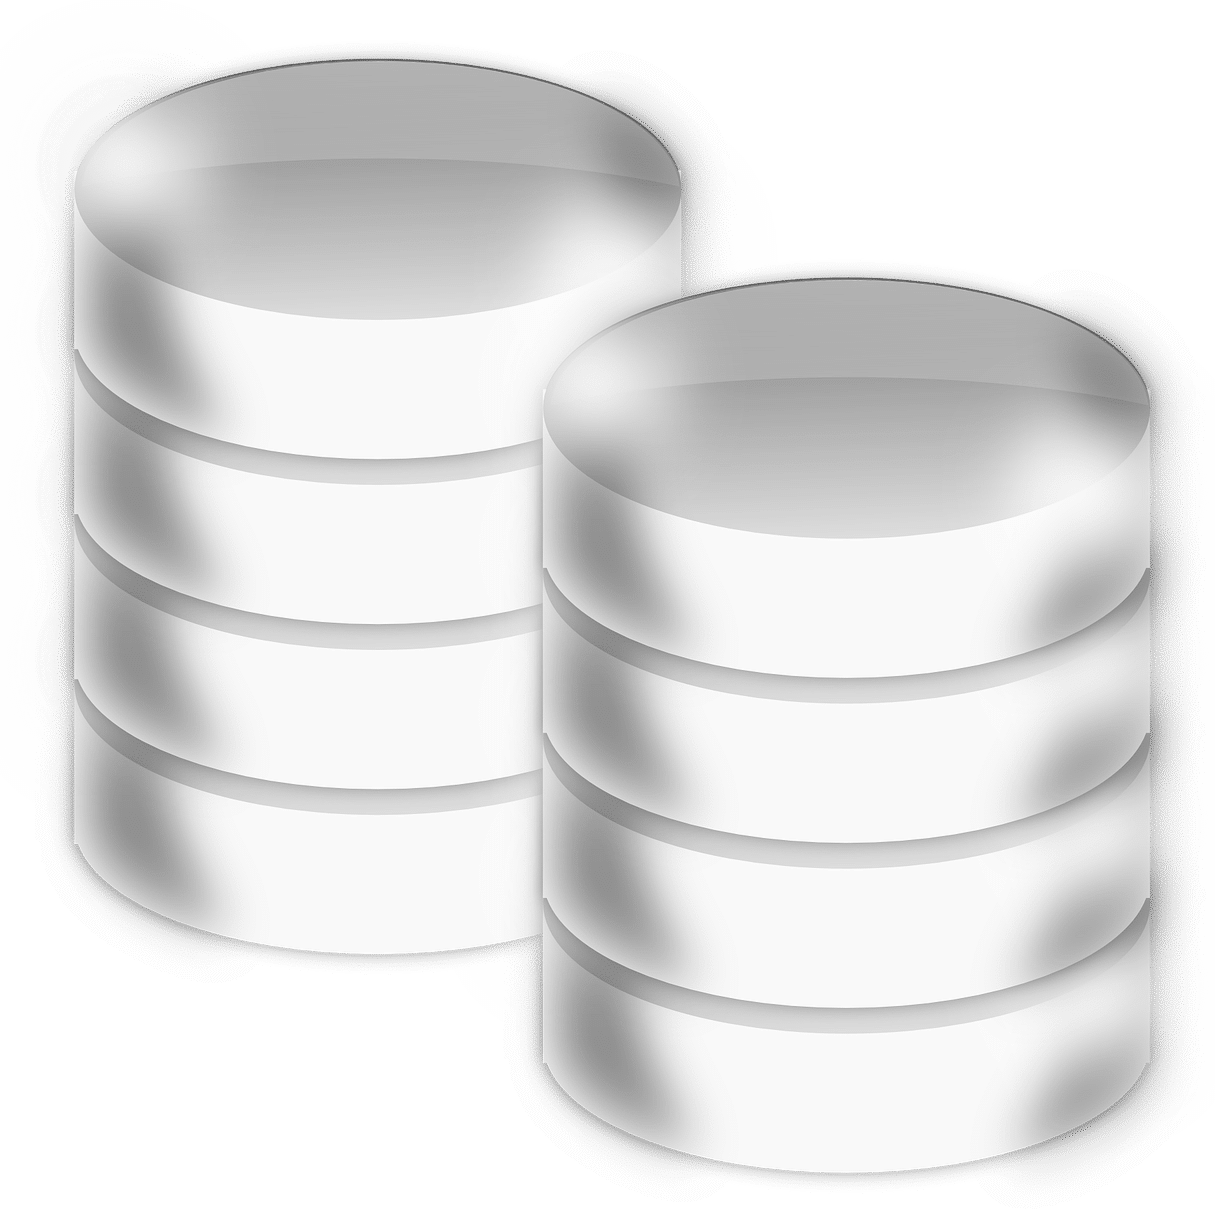 Image de comparaison de base de données SQL et NoSQL